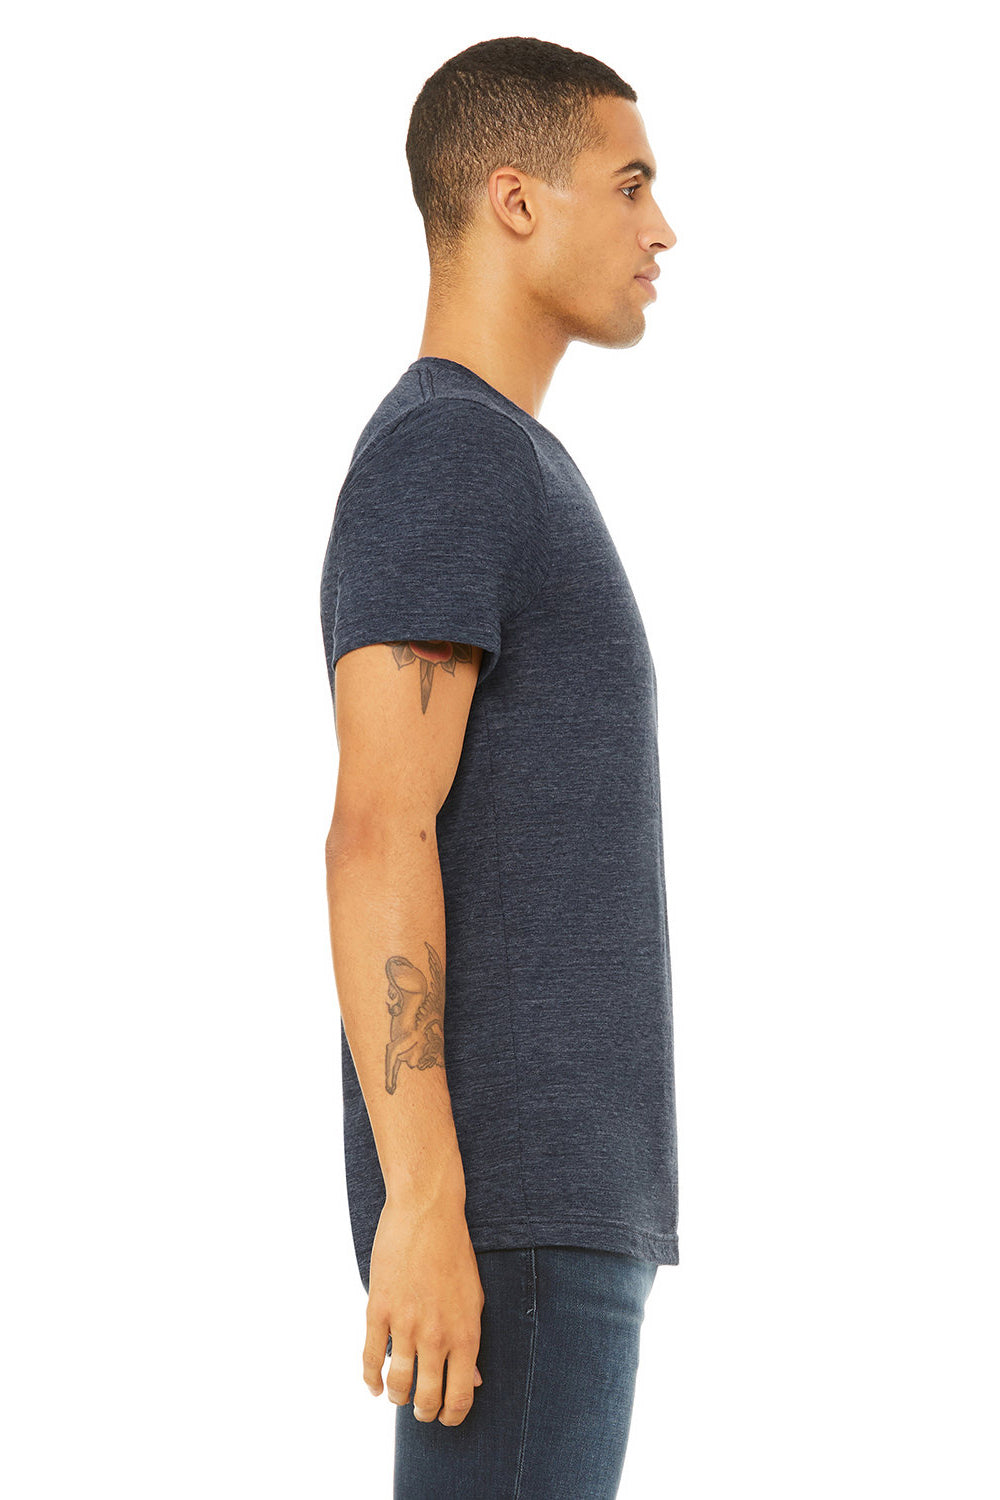 Bella + Canvas BC3005/3005/3655C Mens Jersey Short Sleeve V-Neck T-Shirt Navy Blue Slub Model Side